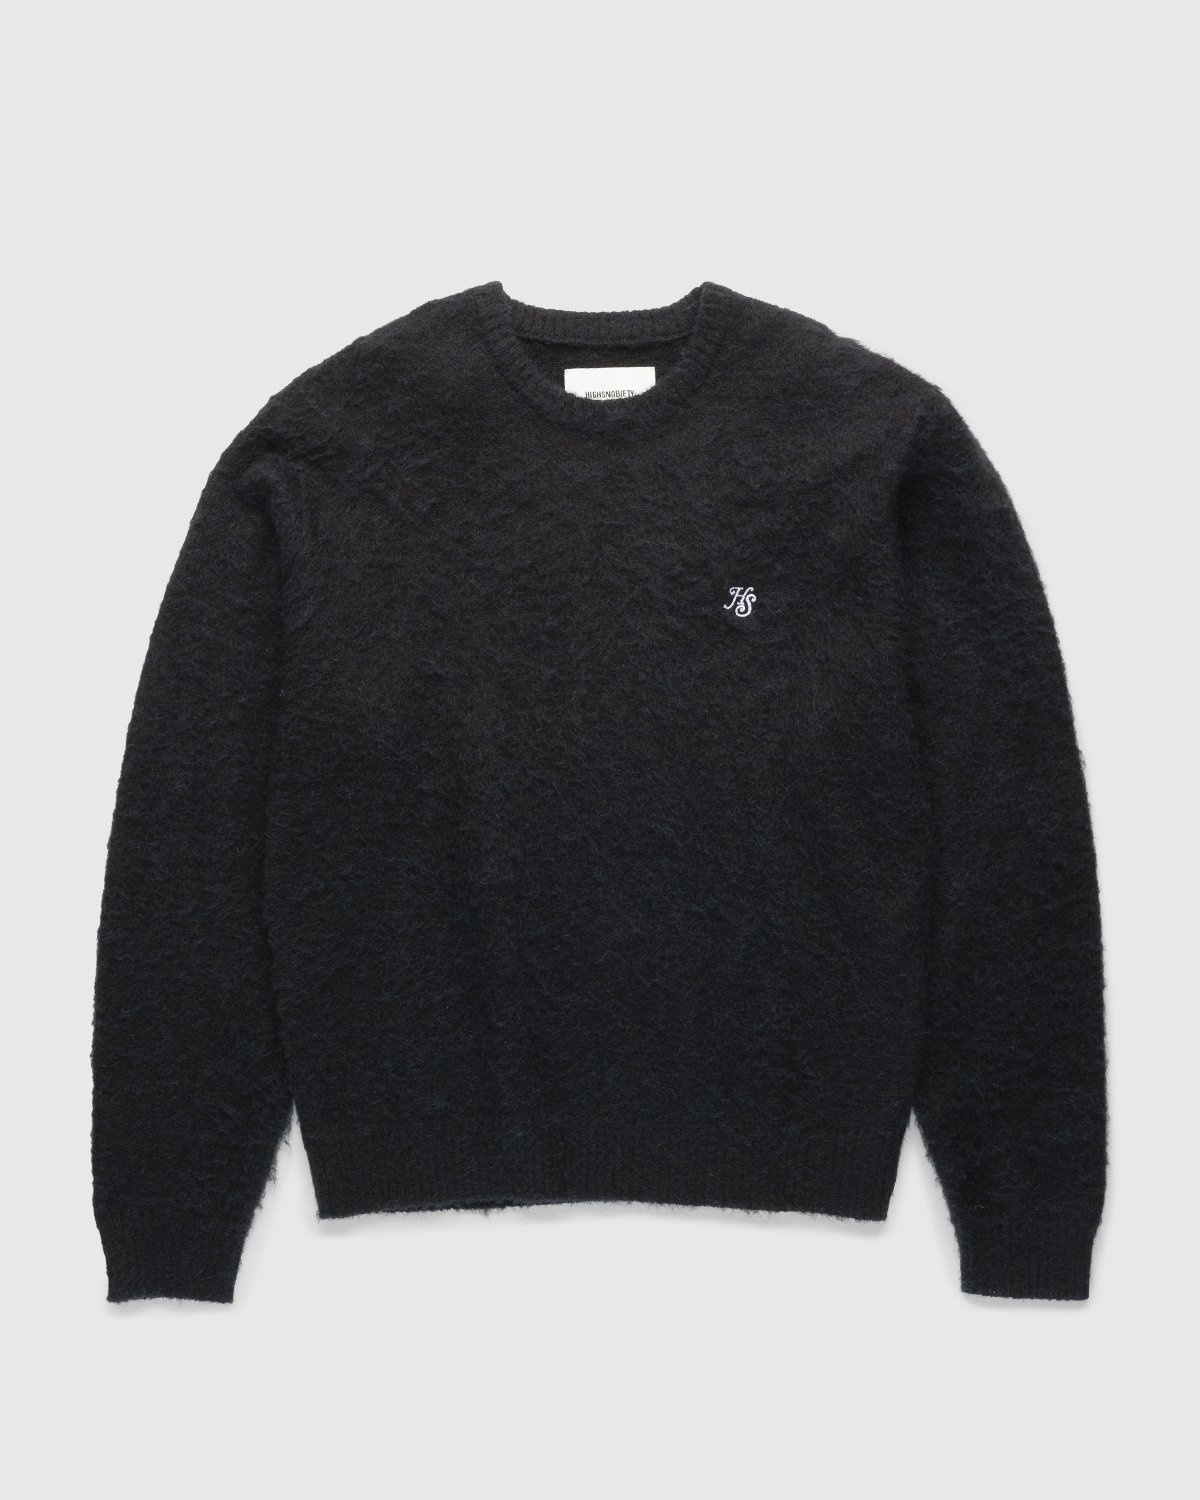 Highsnobiety – Mono Alpaca Sweater Black - Crewnecks - Black - Image 1